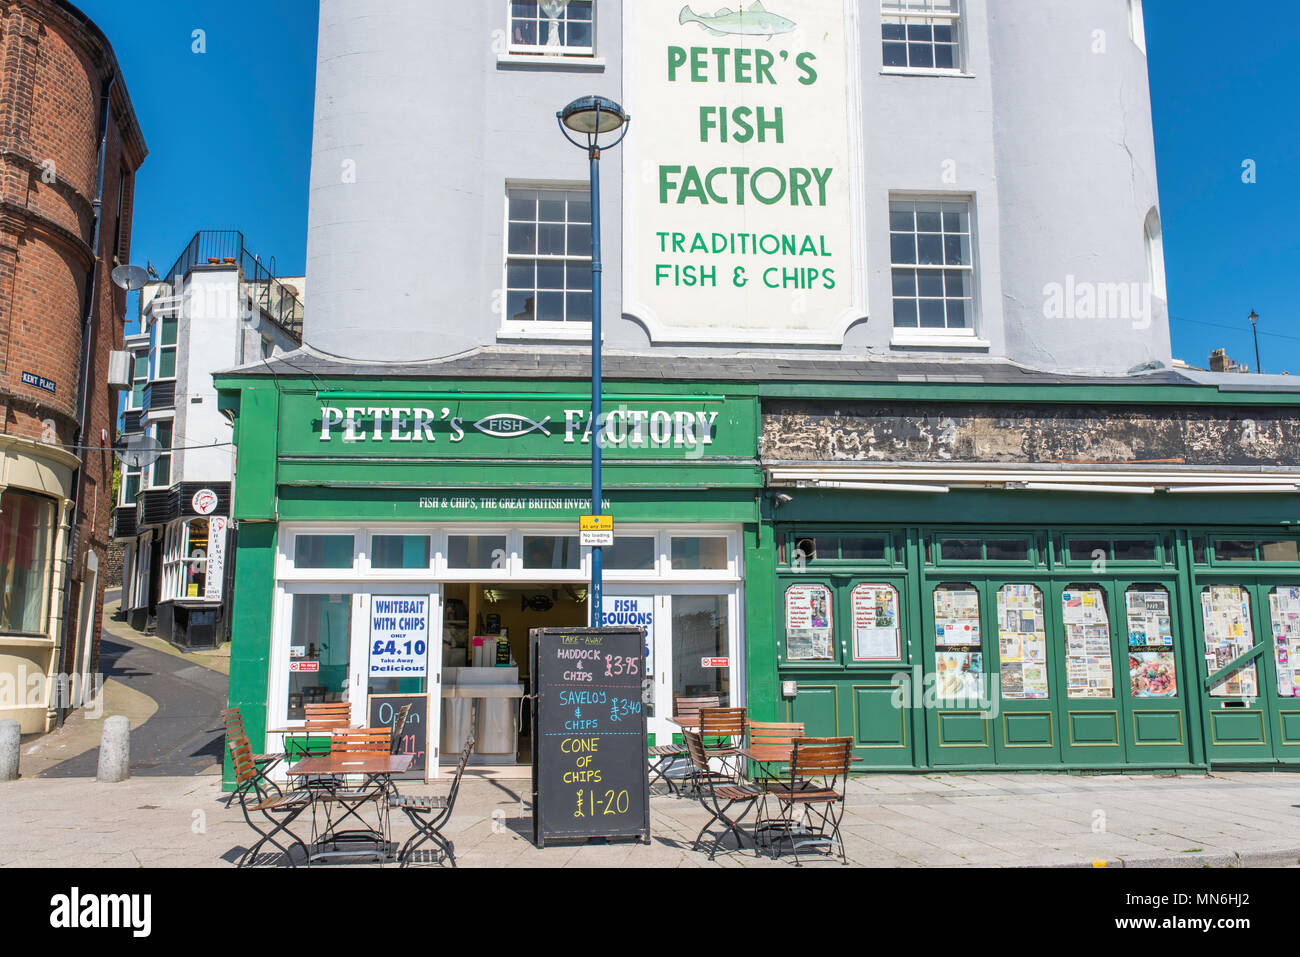 Peter's Fish Factory, einem traditionellen Fisch und Chip Shop an der Strandpromenade neben dem Hafen von Ramsgate, Kent. Stockfoto